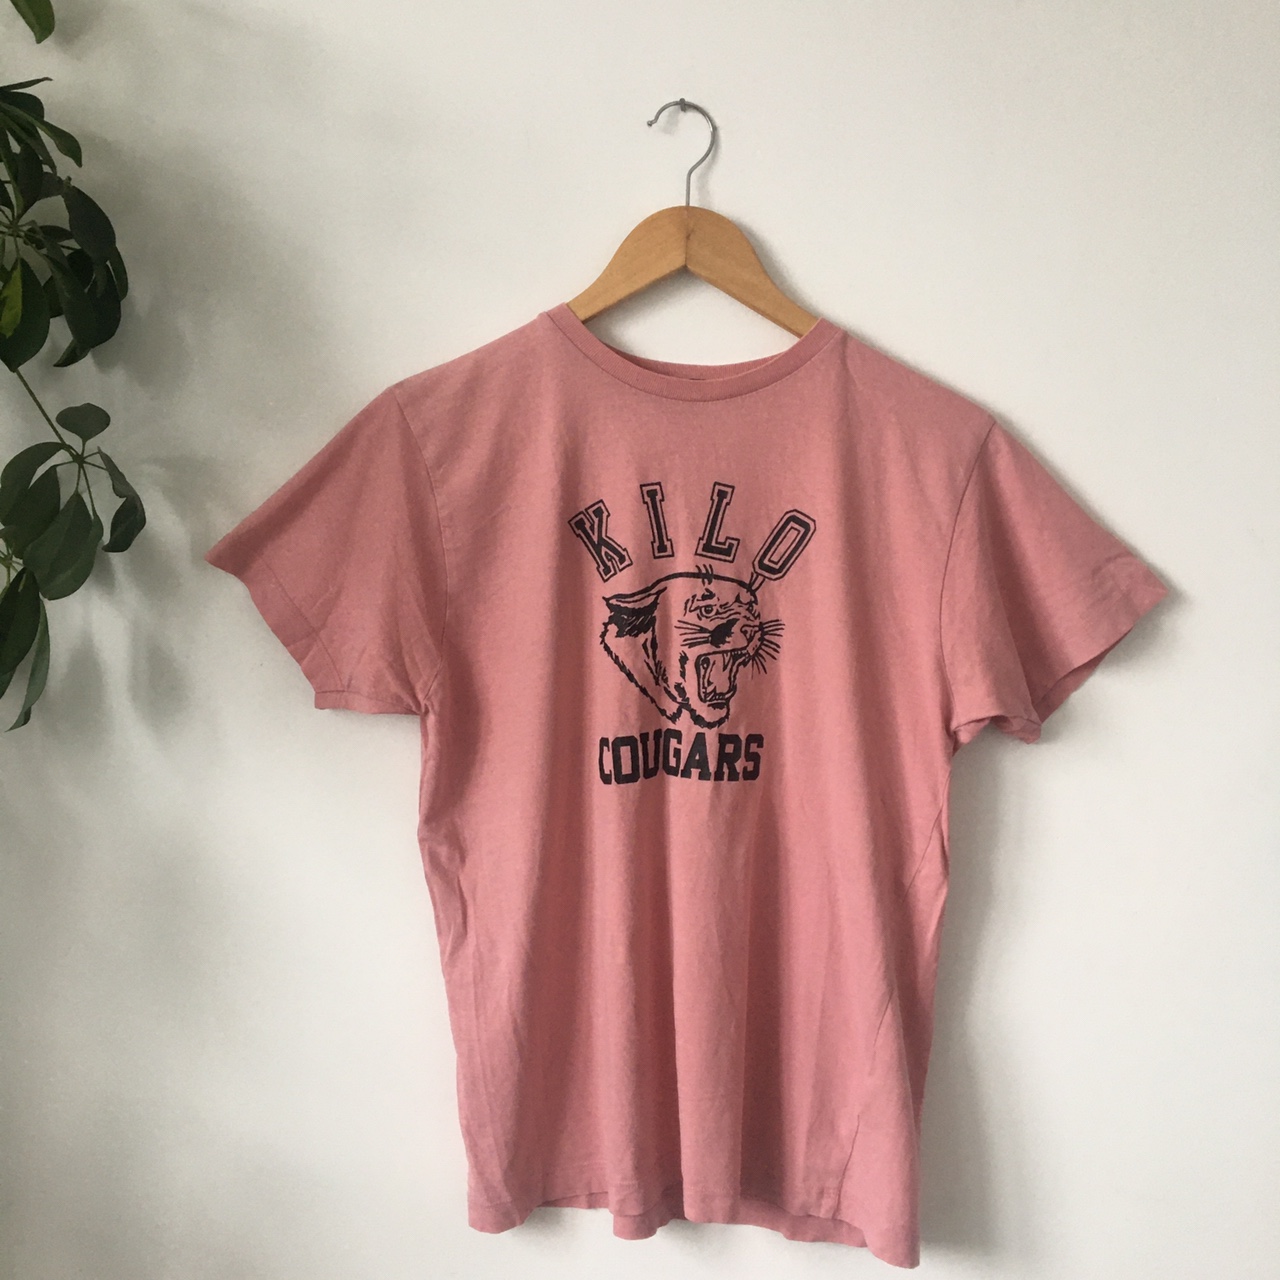 Overdyed Kilo Cougars t-shirt - Maerl Vintage